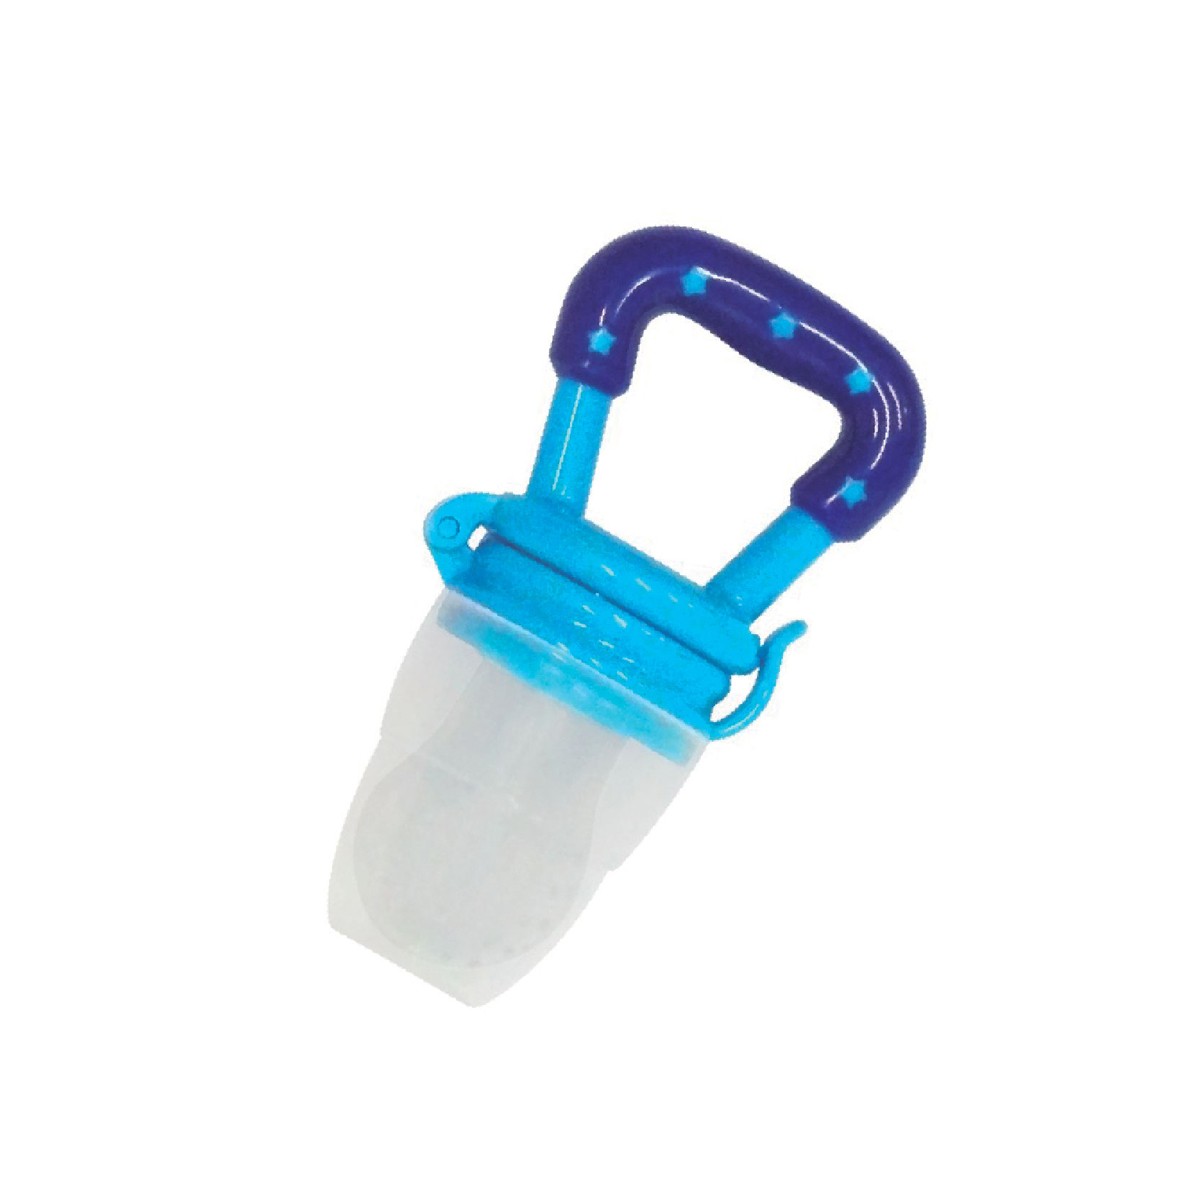 Bico alimentador de silicone azul-7841-40256